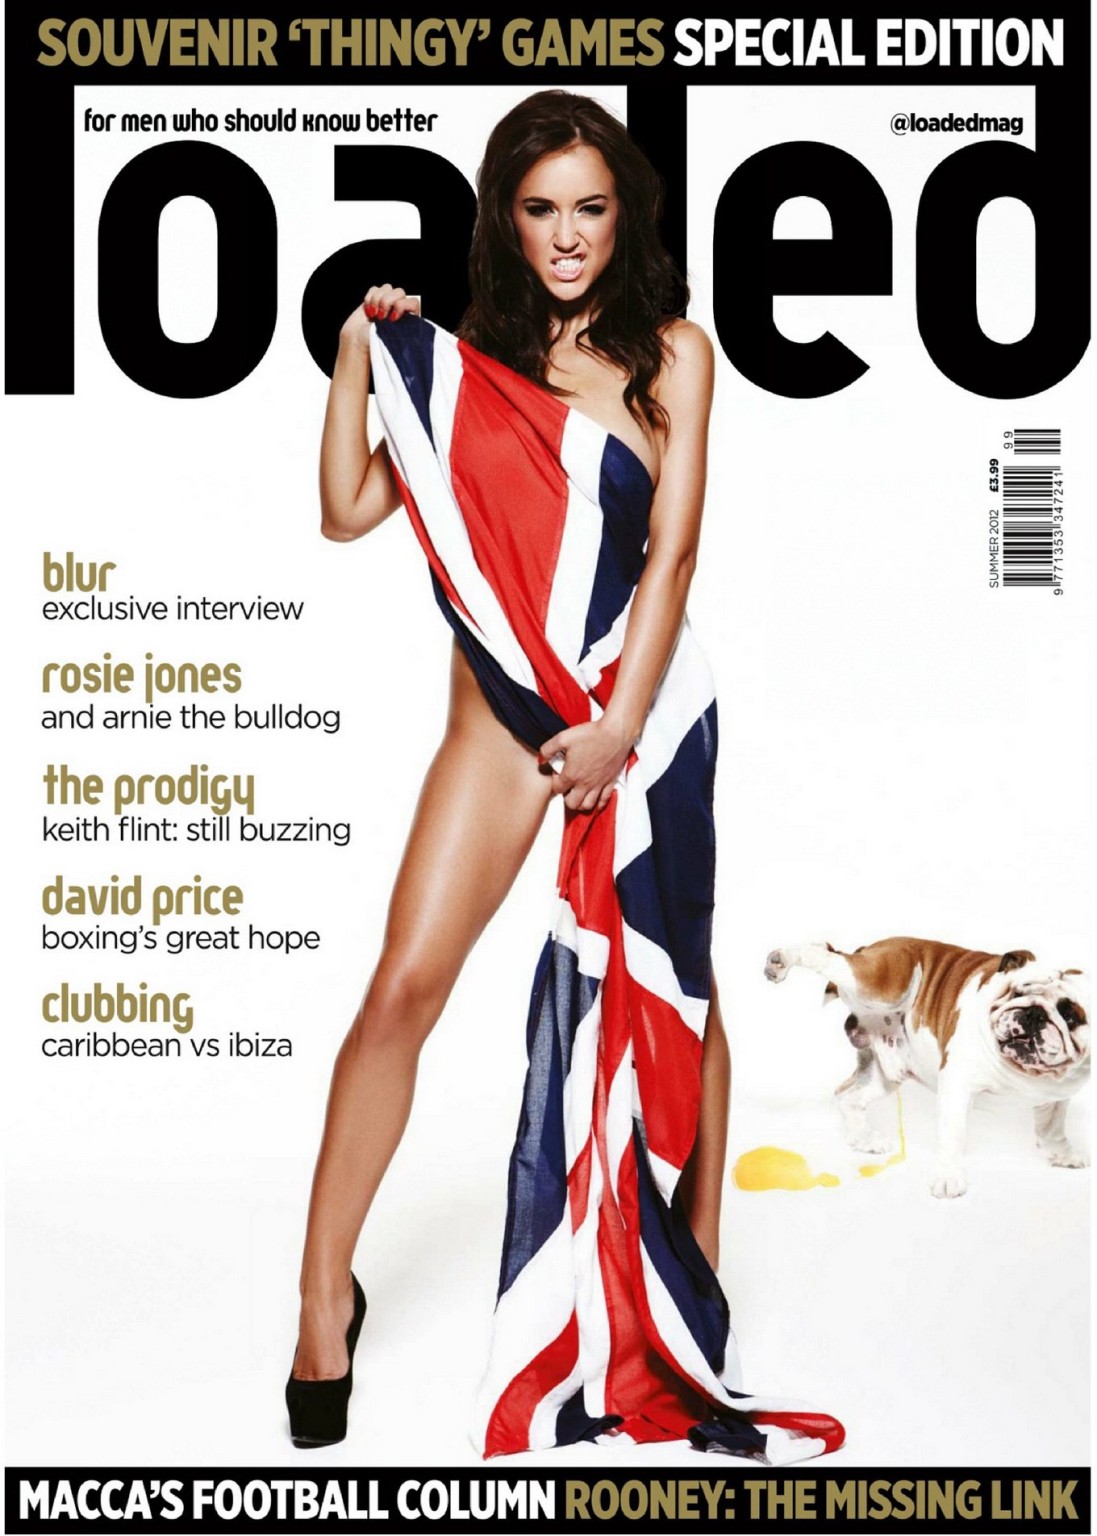 Rosie Jones montrant ses gros seins dans le magazine "loaded" sp olympique été 2012
 #75256305